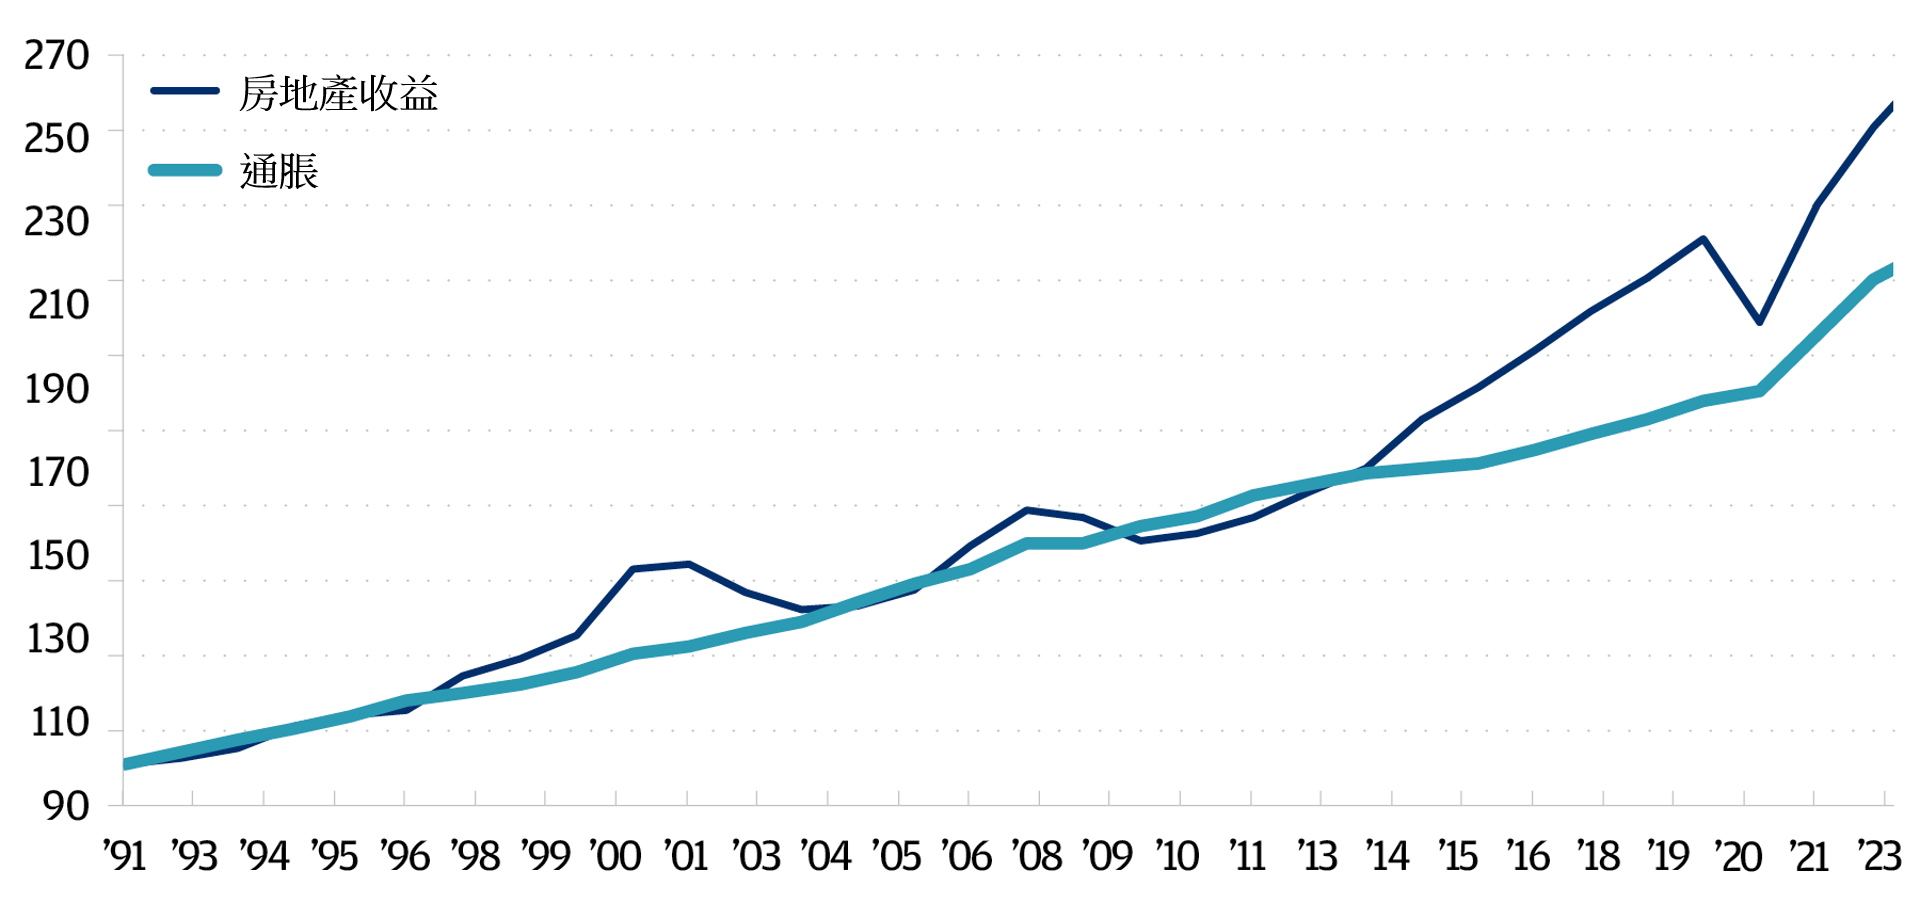 該線圖顯示了1991年至2023年的房地產收入和通脹情況。摩根資產管理GRA Research的數據顯示，過去30年房地產收益率的增長速度普遍超過通脹。